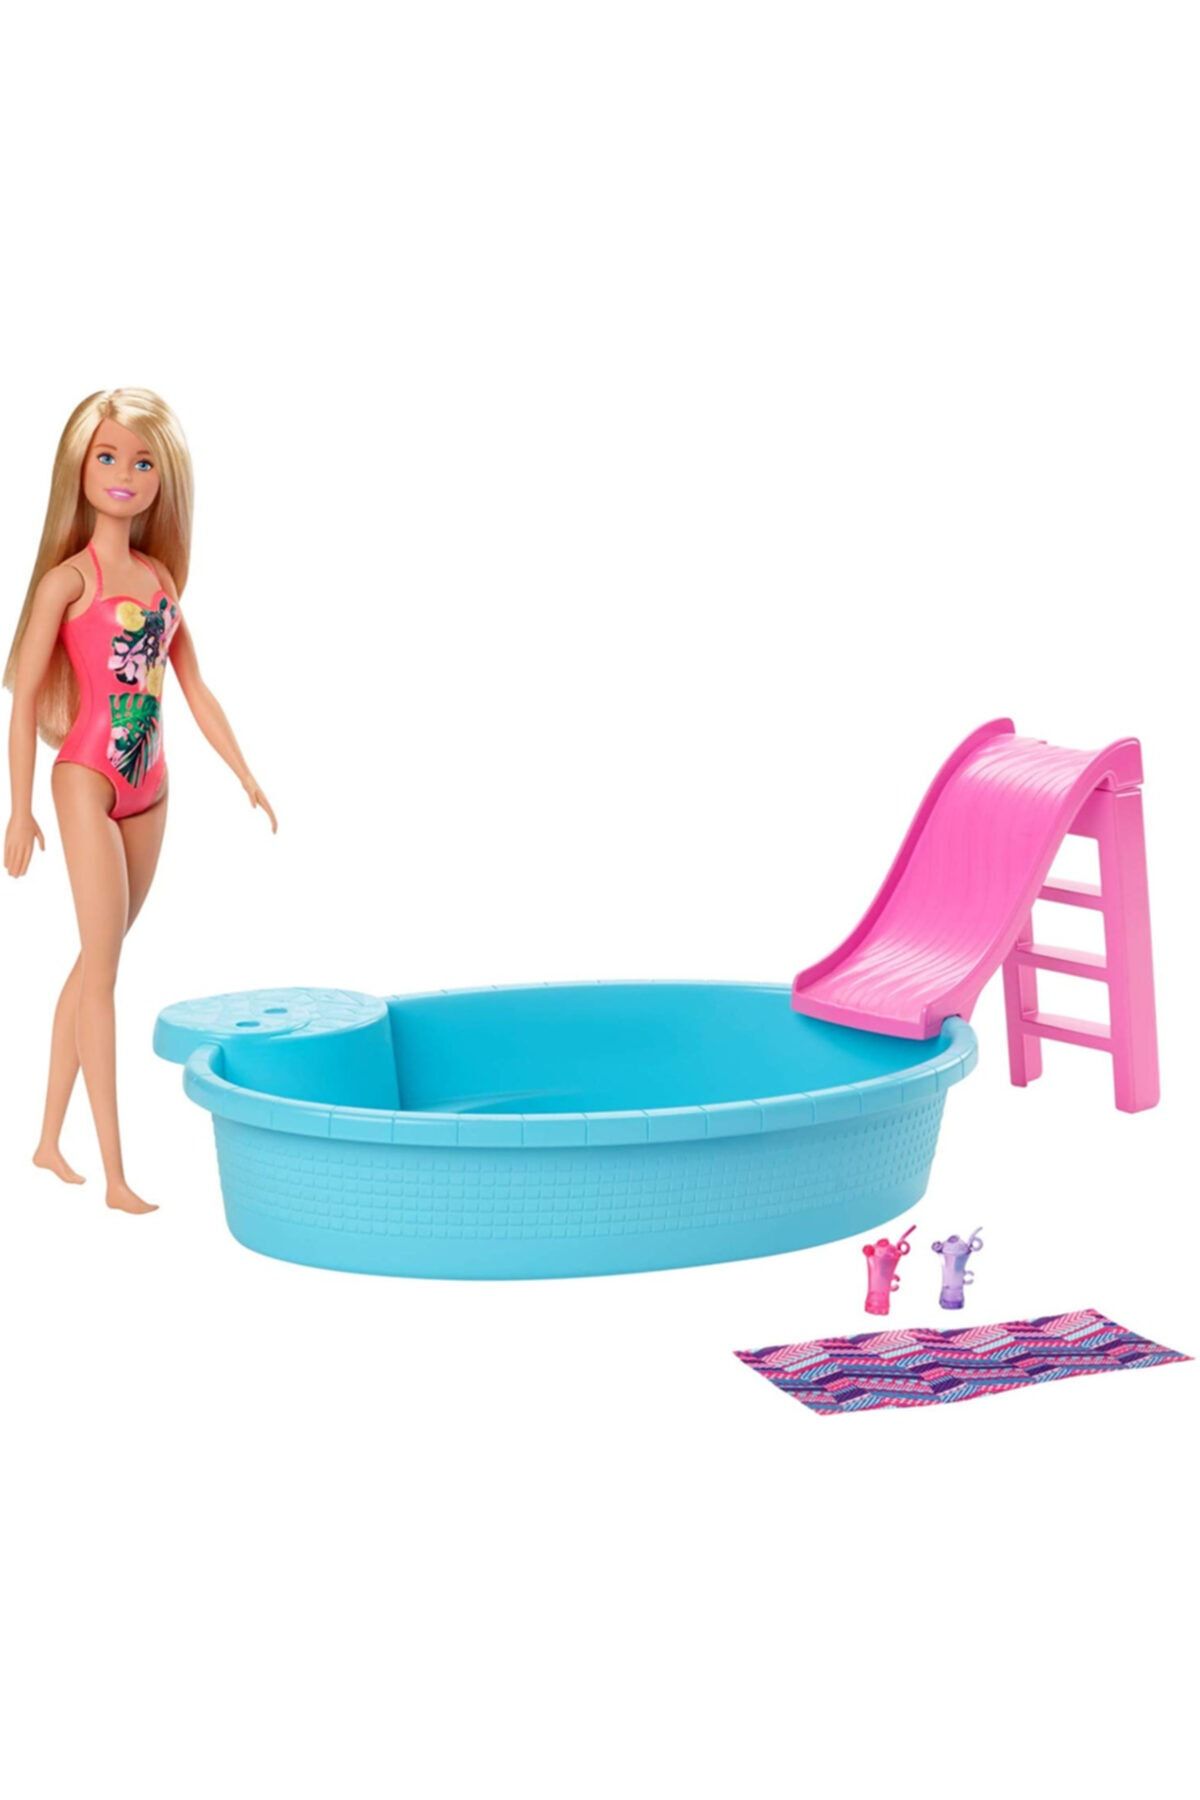 Barbie Ve Eğlenceli Havuzu, 30 Cm Boyunda, Sarışın Bebek Ile Kaydıraklı Havuz Oyun Seti Ve Ak